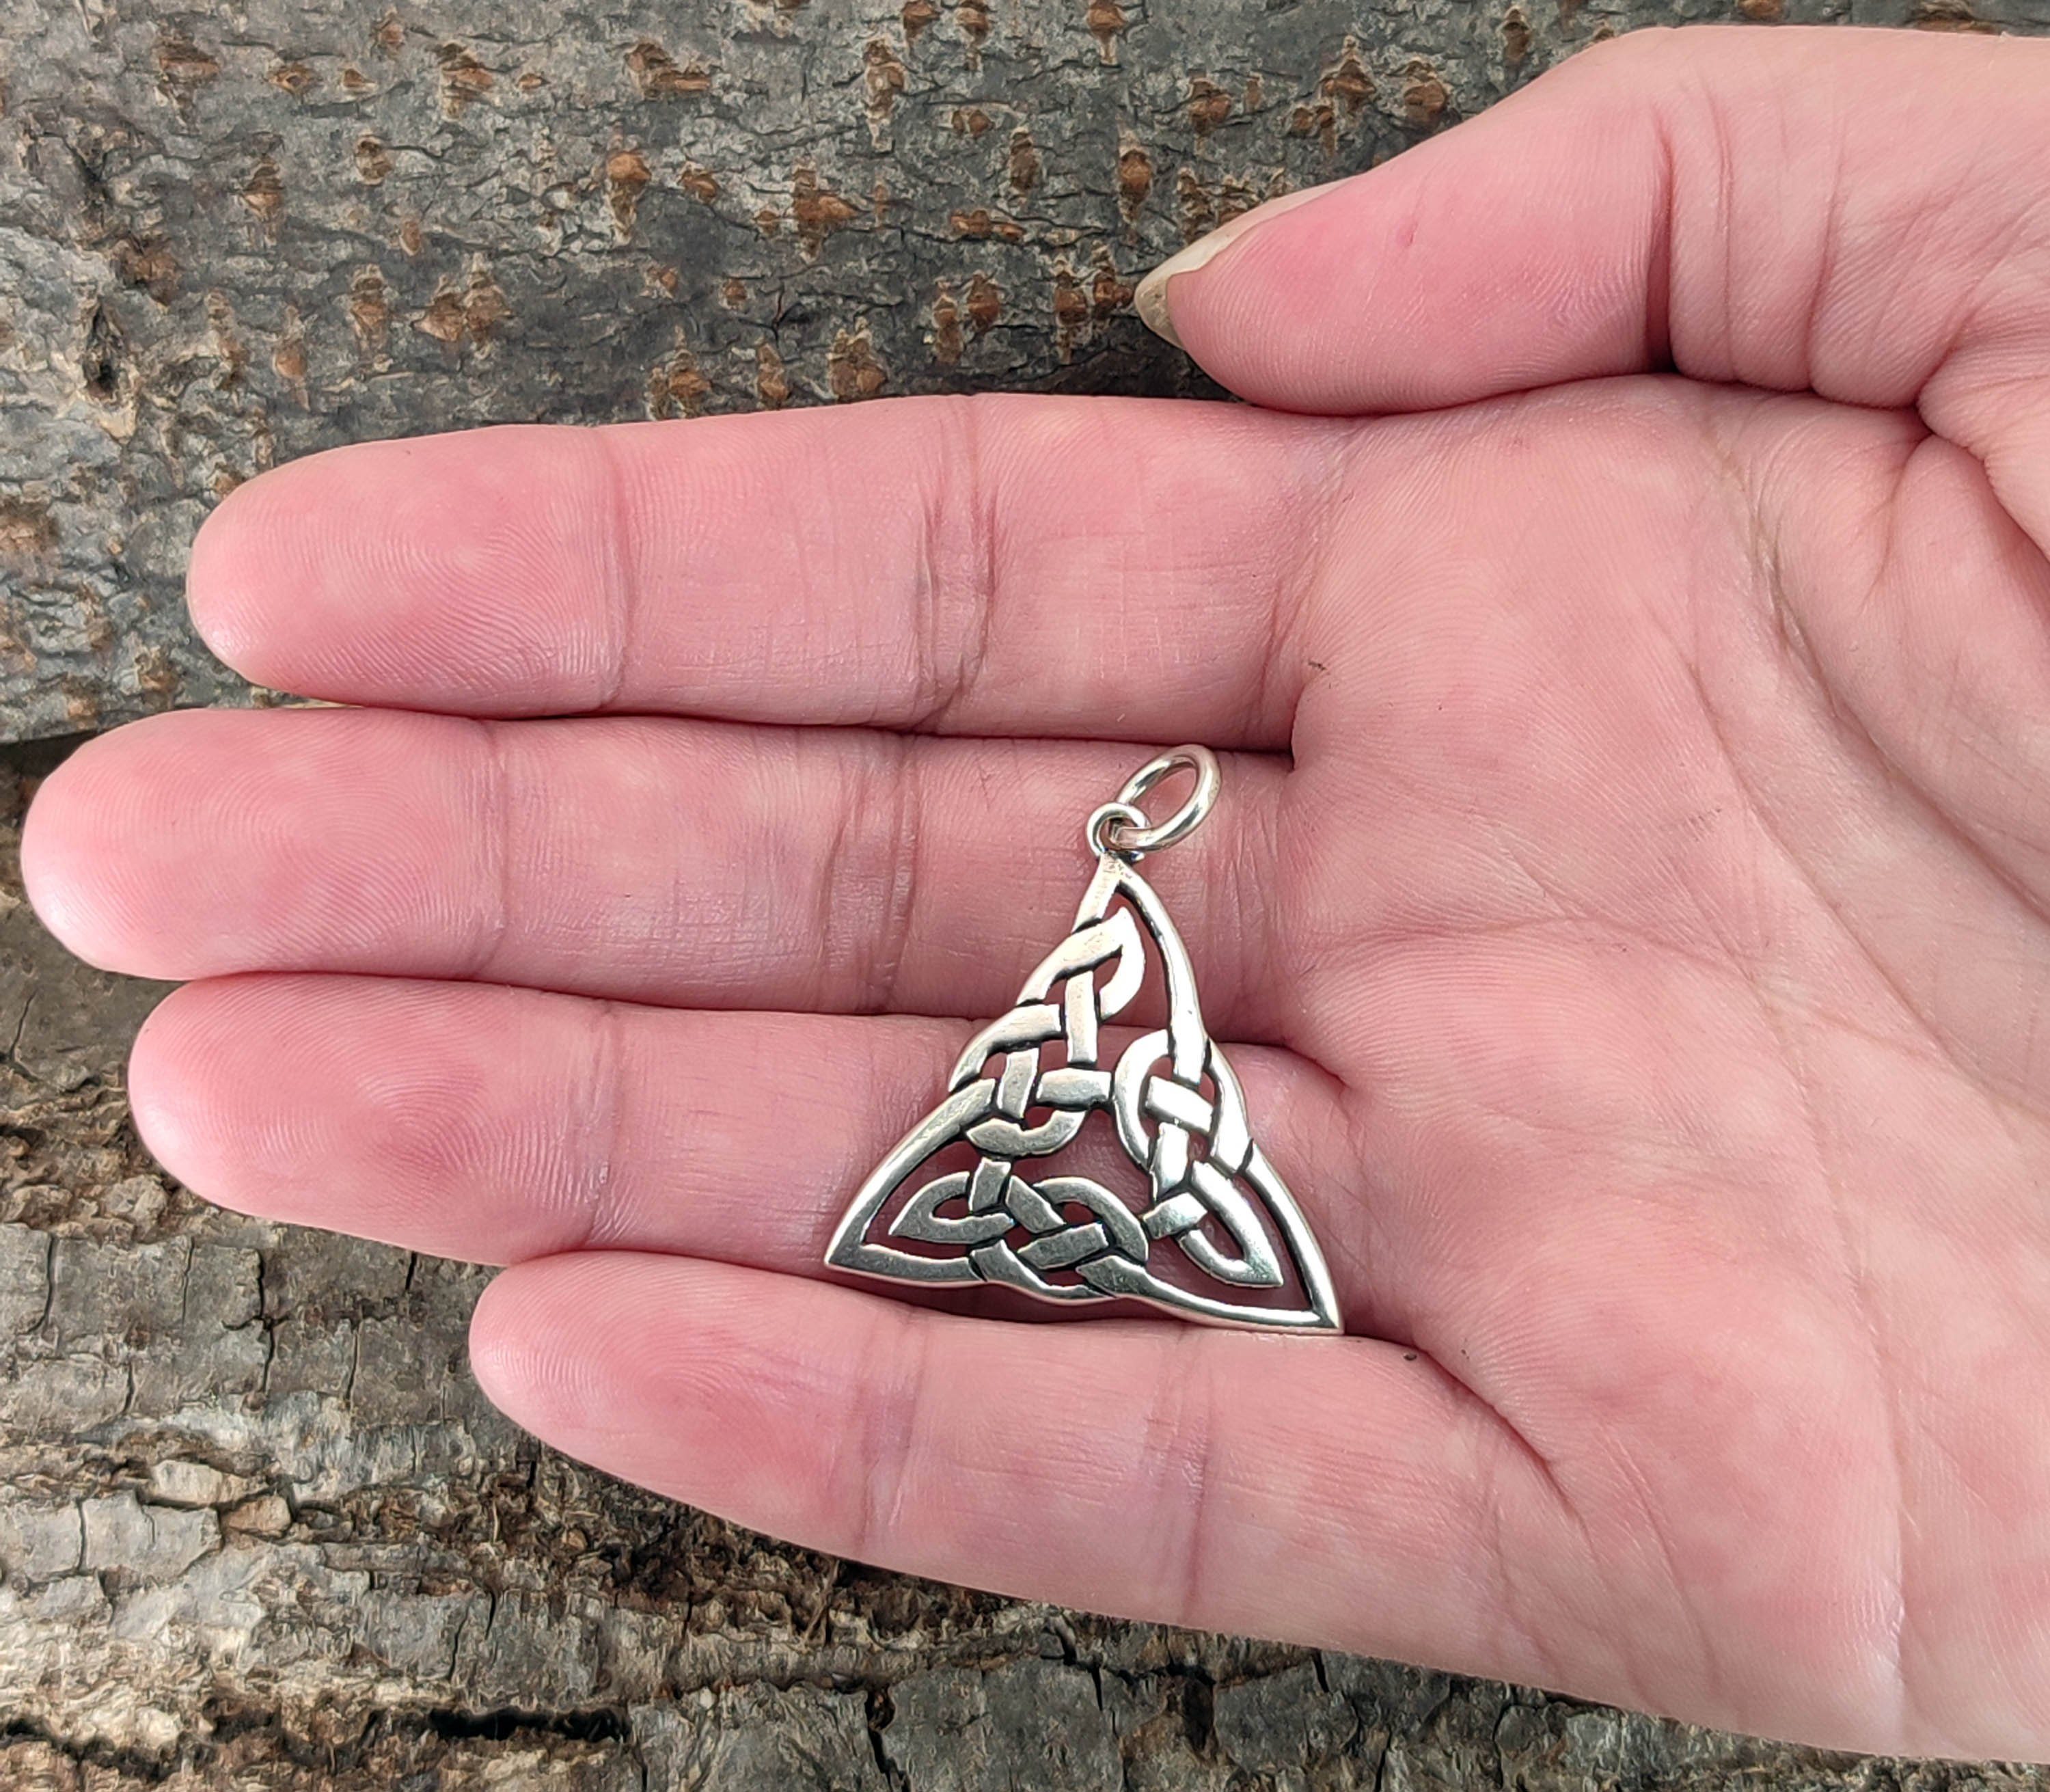 Keltenknoten Dreieck Knoten Kiss Silber of Leather Kettenanhänger 925 Anhänger keltischer